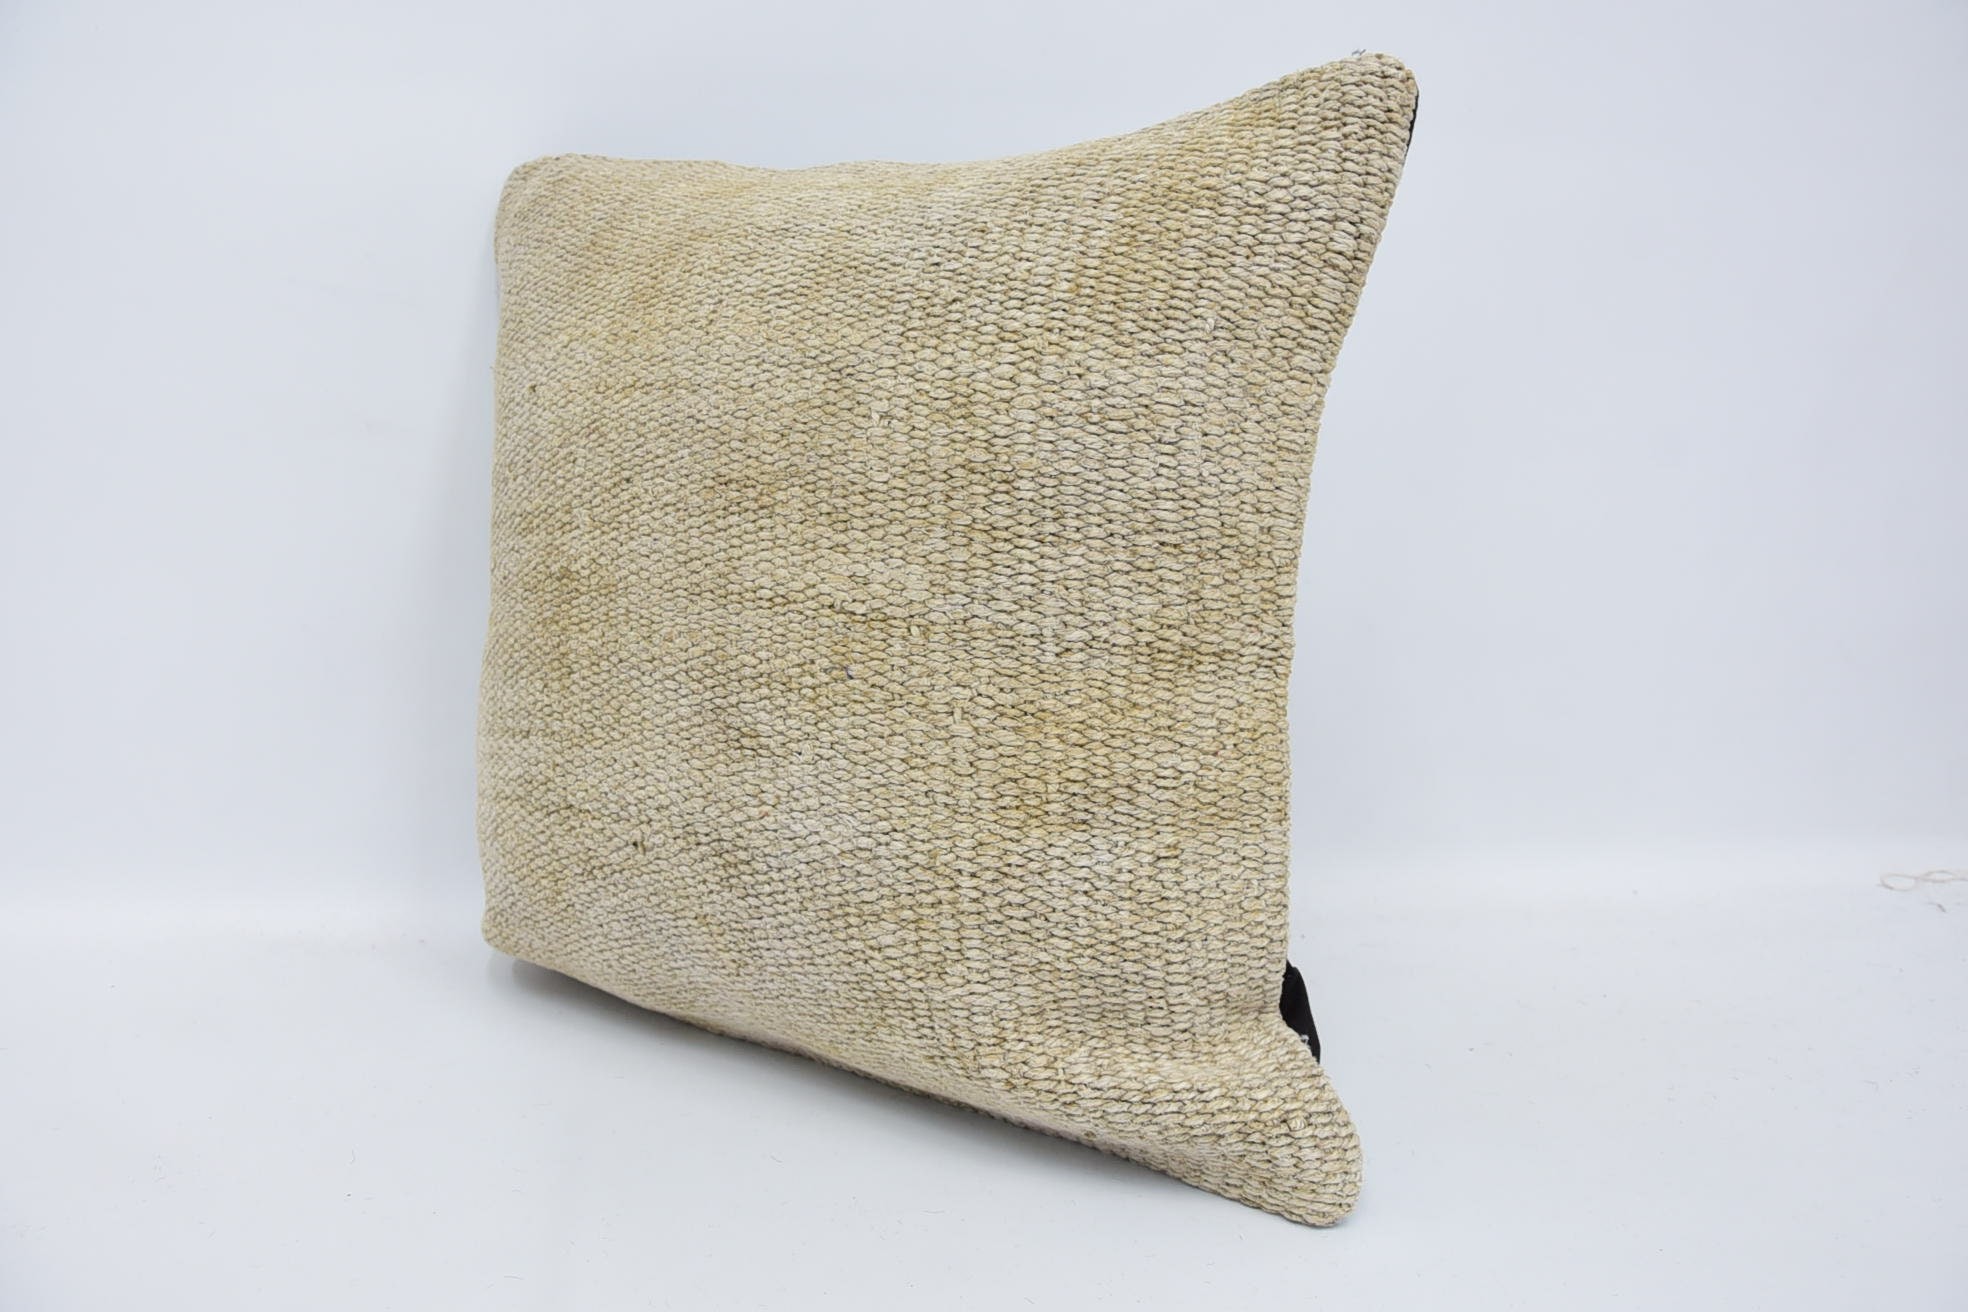 Handmade Kilim Cushion, 18"x18" Beige Pillow Cover, Vintage Pillow, Chair Pillow Cover, Vintage Kilim Throw Pillow, Bench Cushion Case